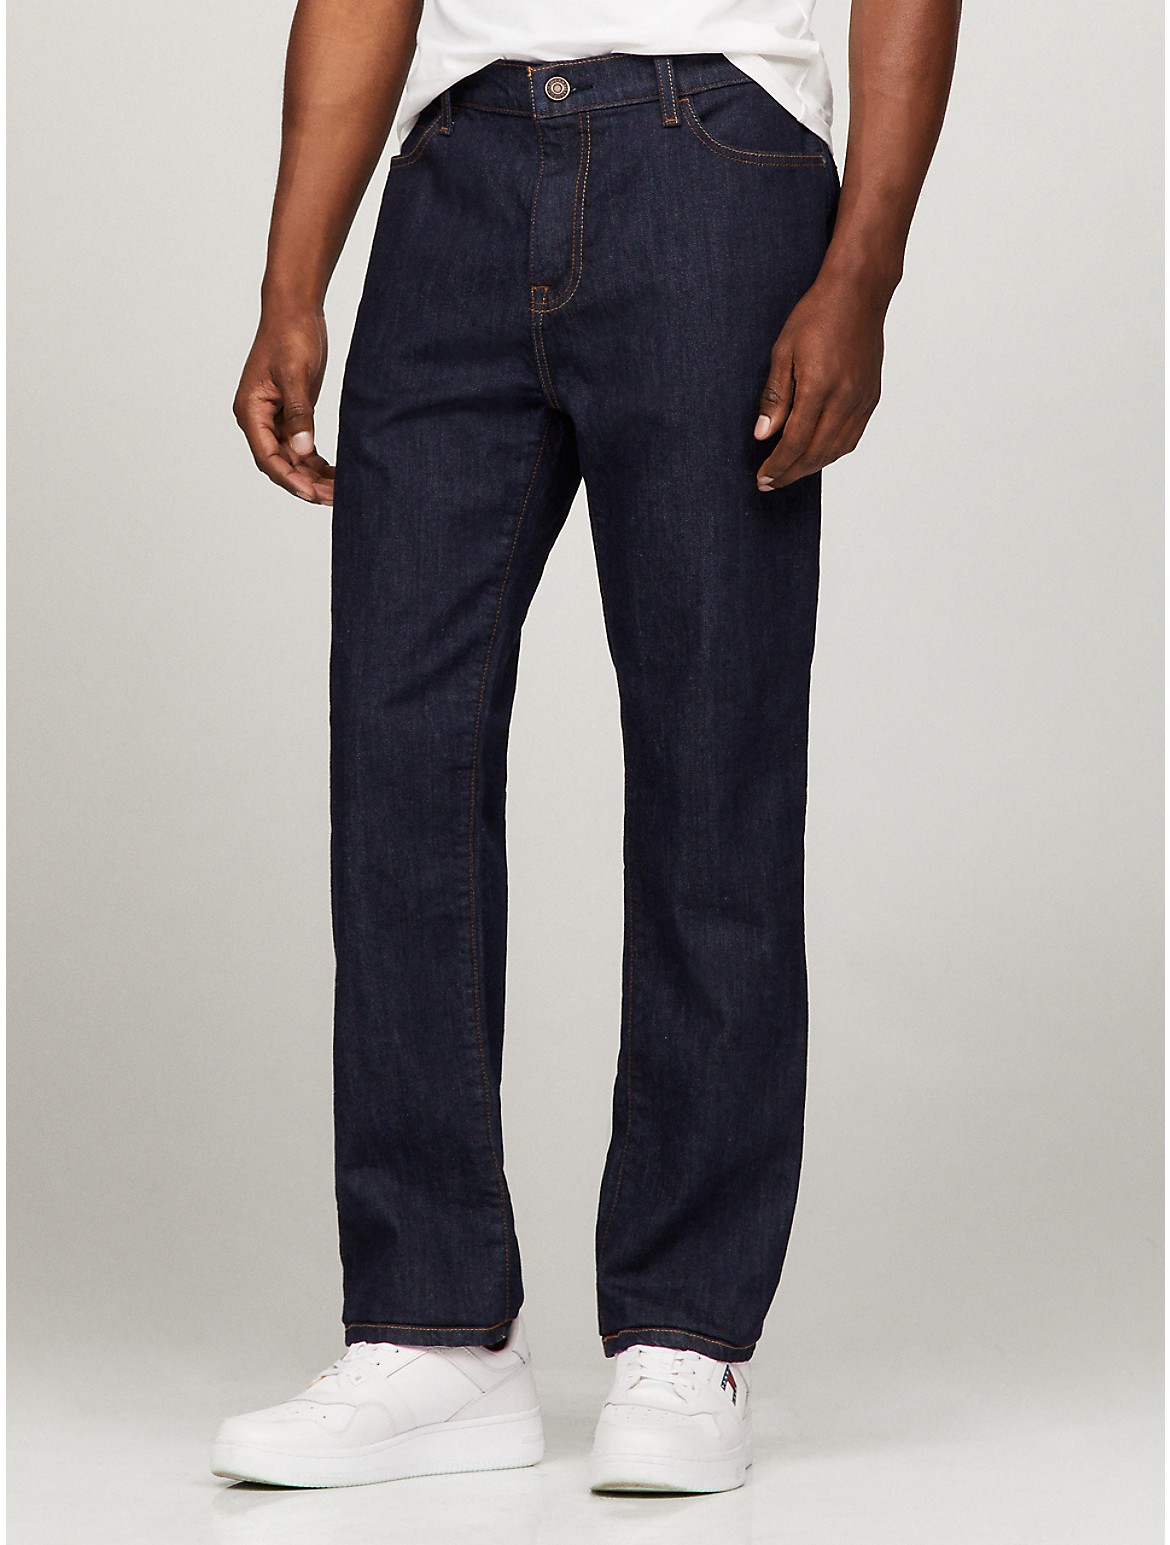 Shop Tommy Hilfiger Essential Straight Fit Dark Wash Jean